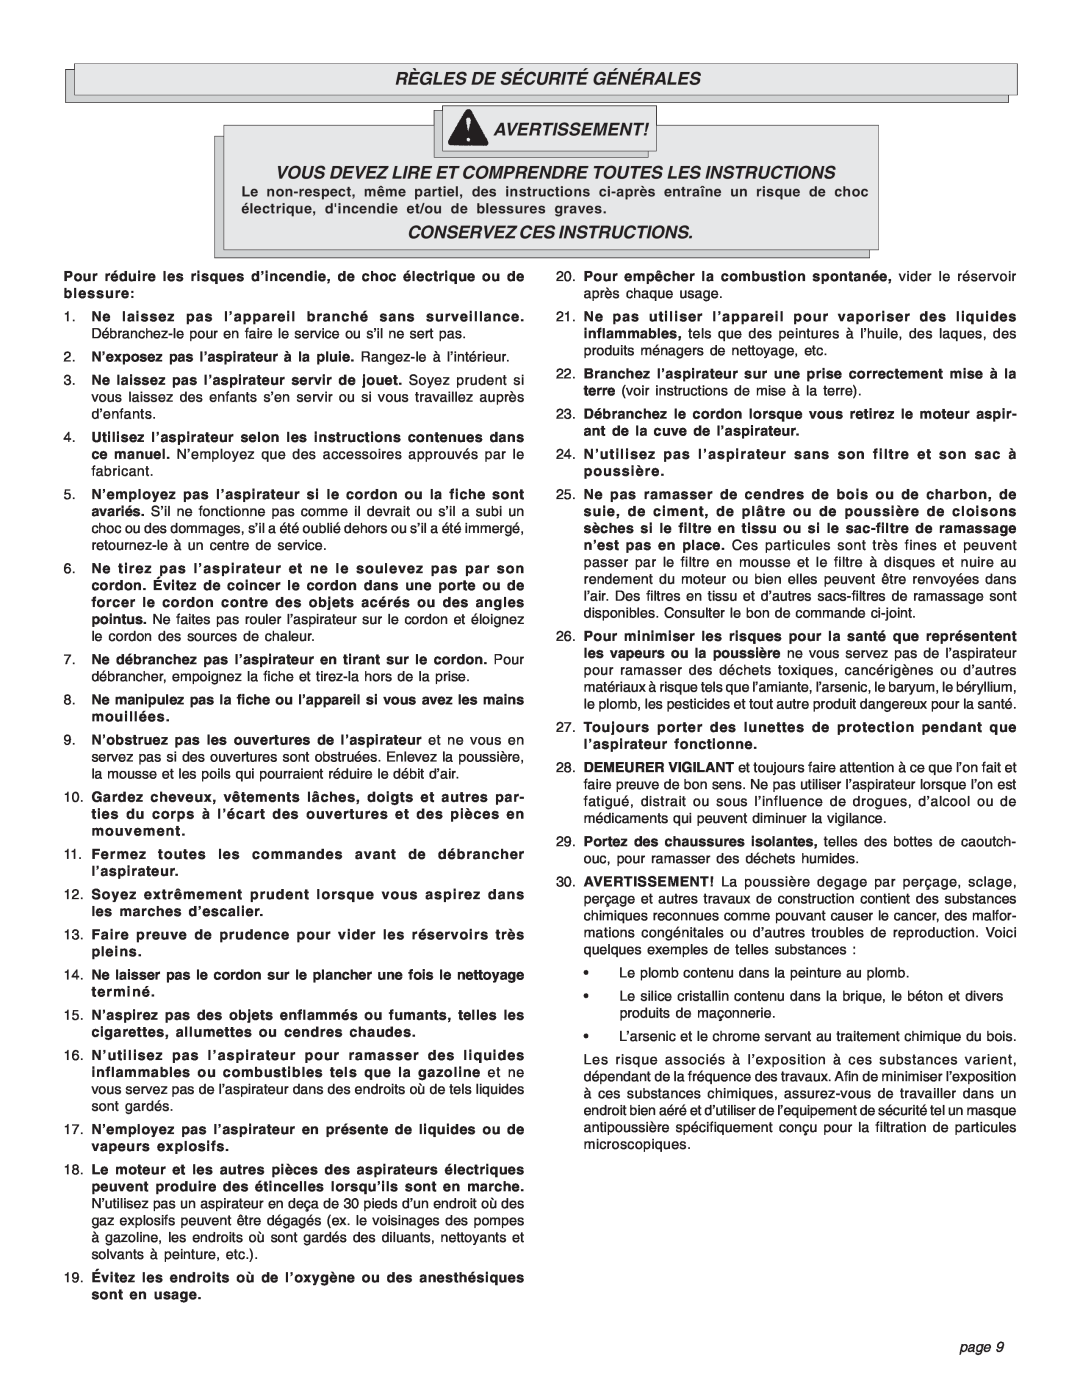 Intec 8940-20 manual Règles De Sécurité Générales Avertissement, Conservez Ces Instructions, page 